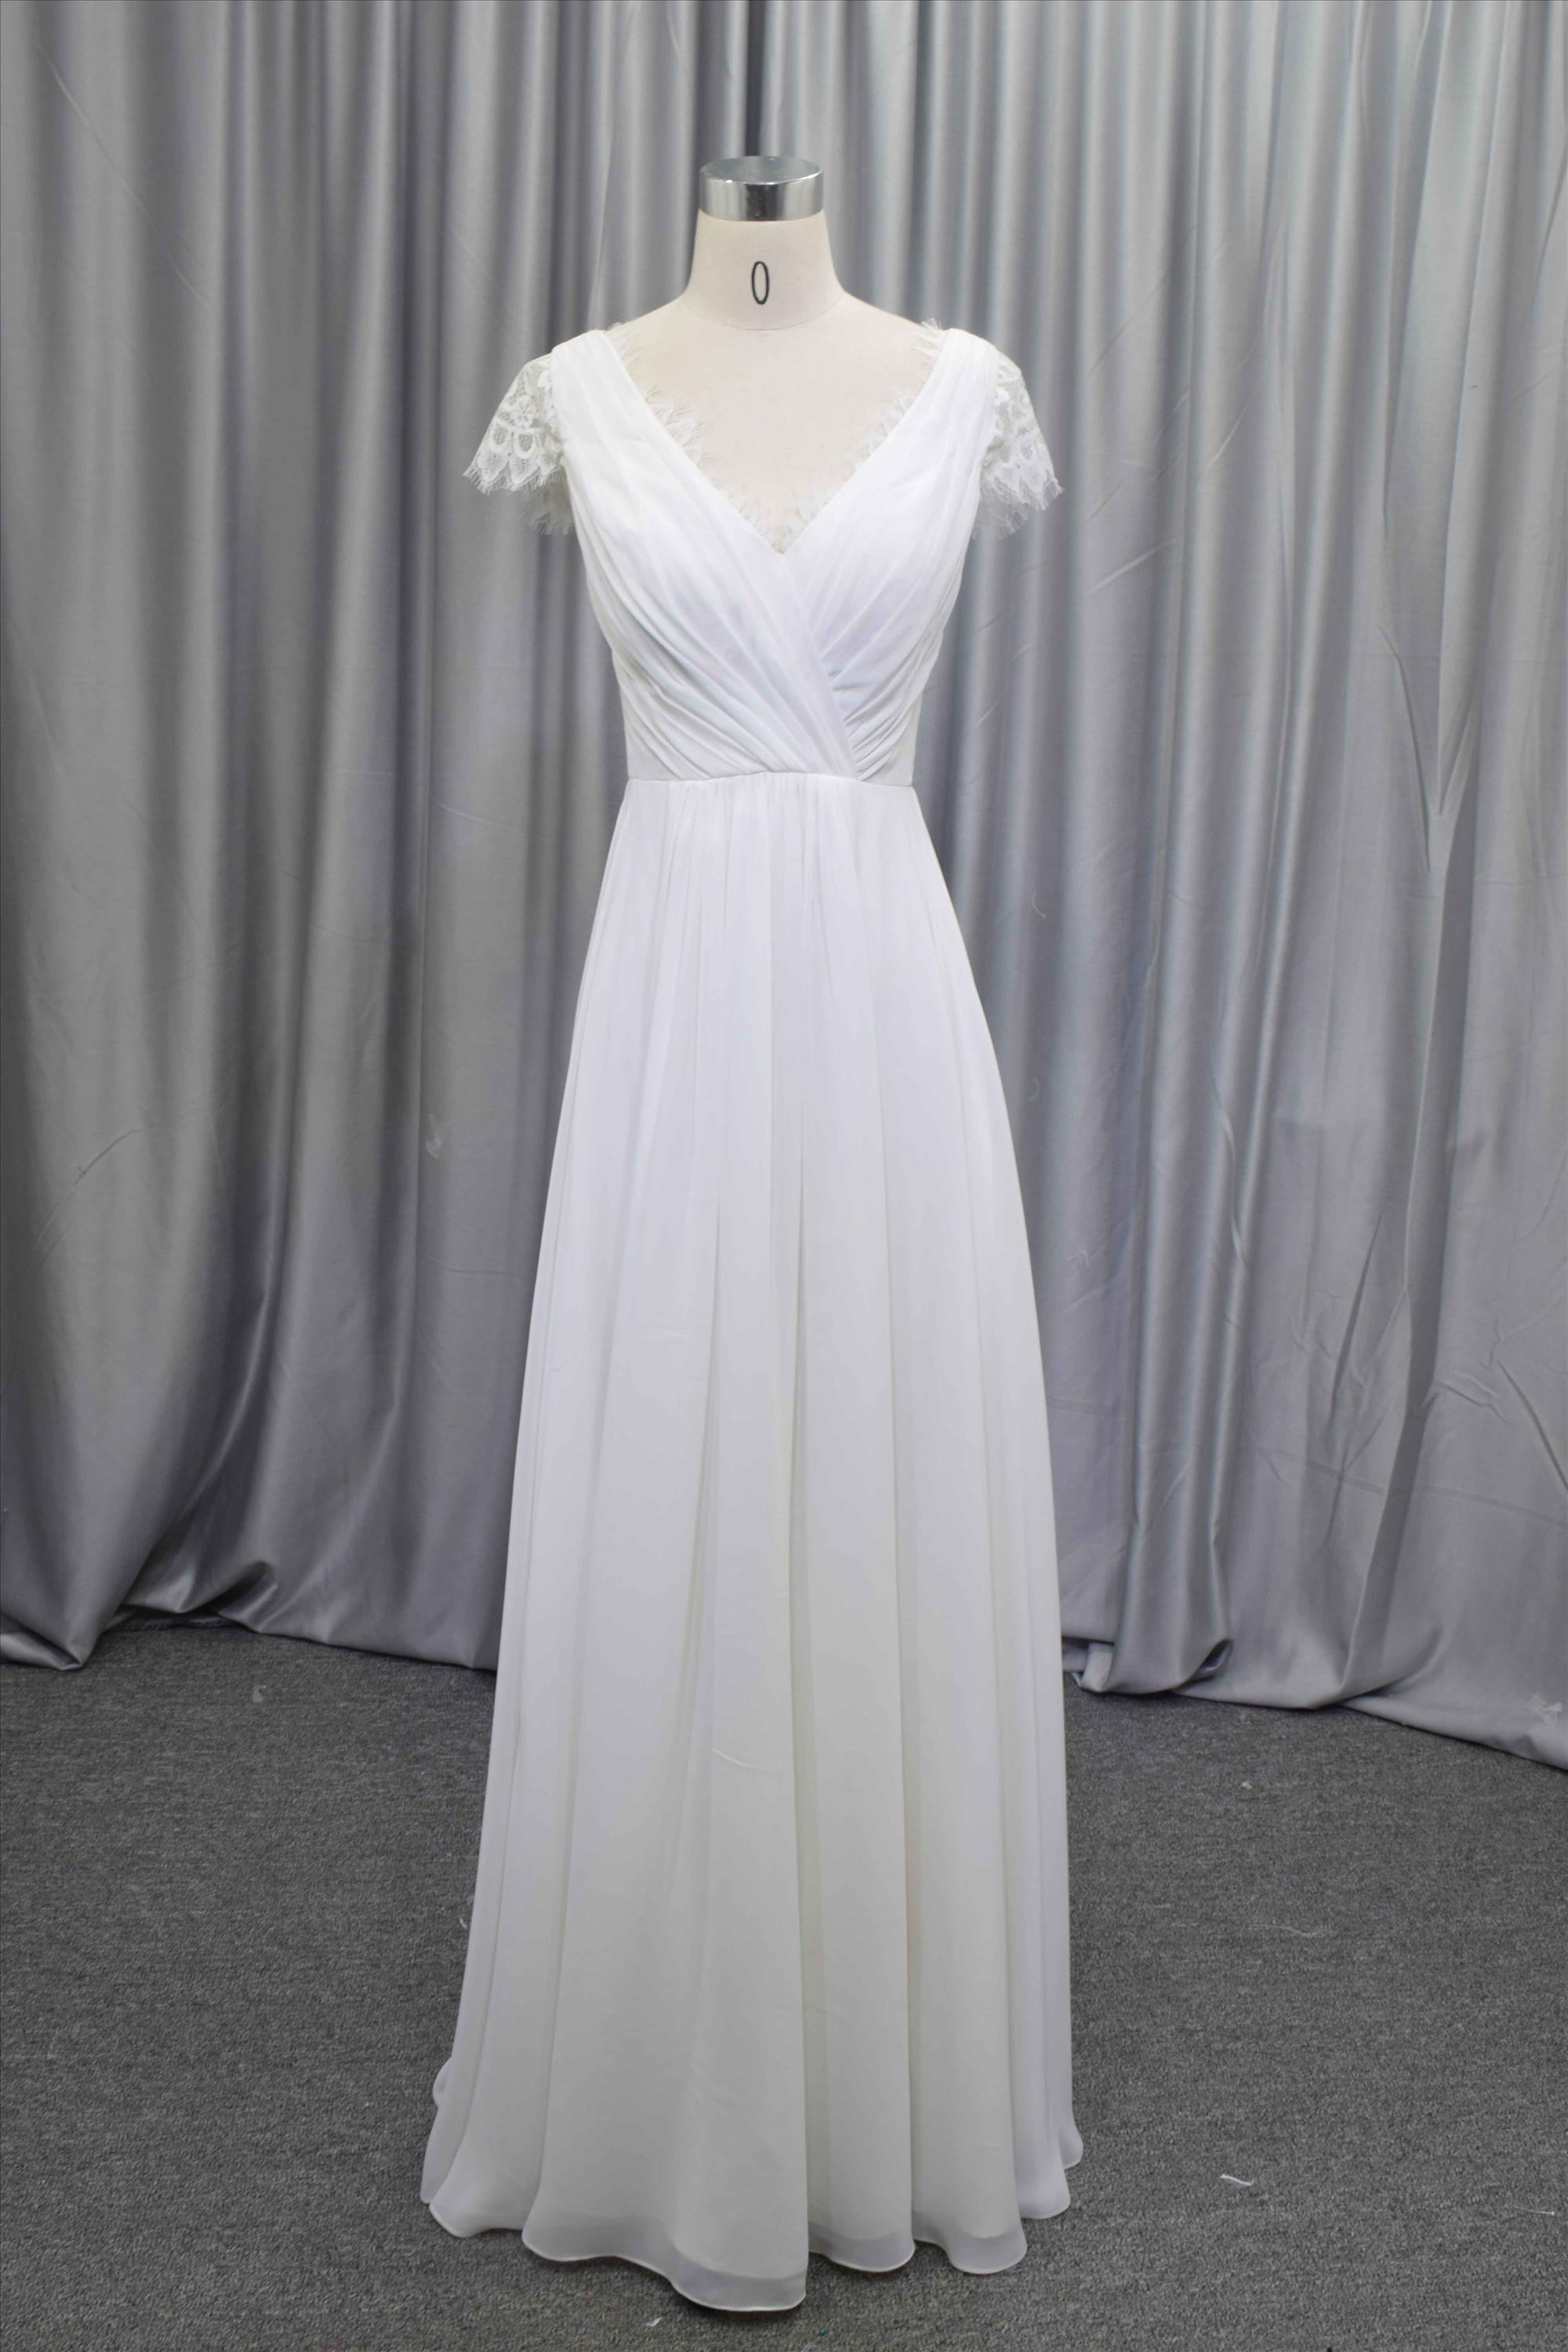 Simple  Elegant chiffon bridal gown with a key hole back